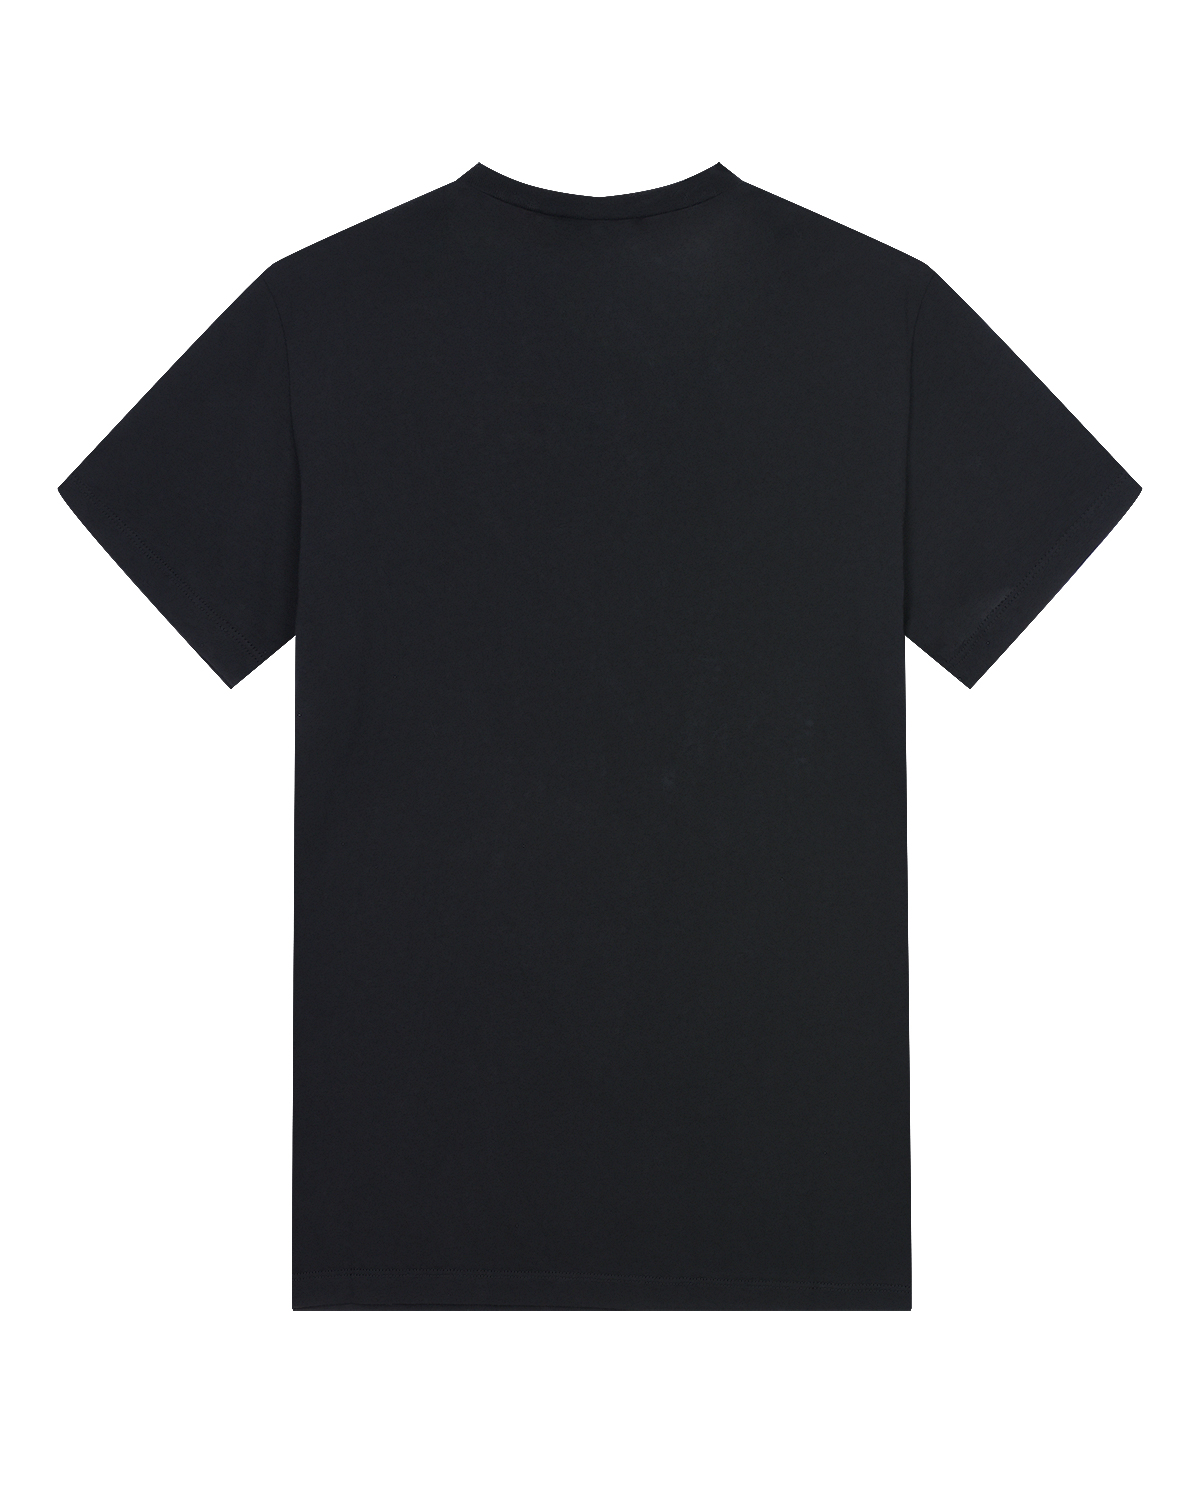 Черная футболка с принтом и стразами No. 21 детская, размер 140, цвет черный - фото 2